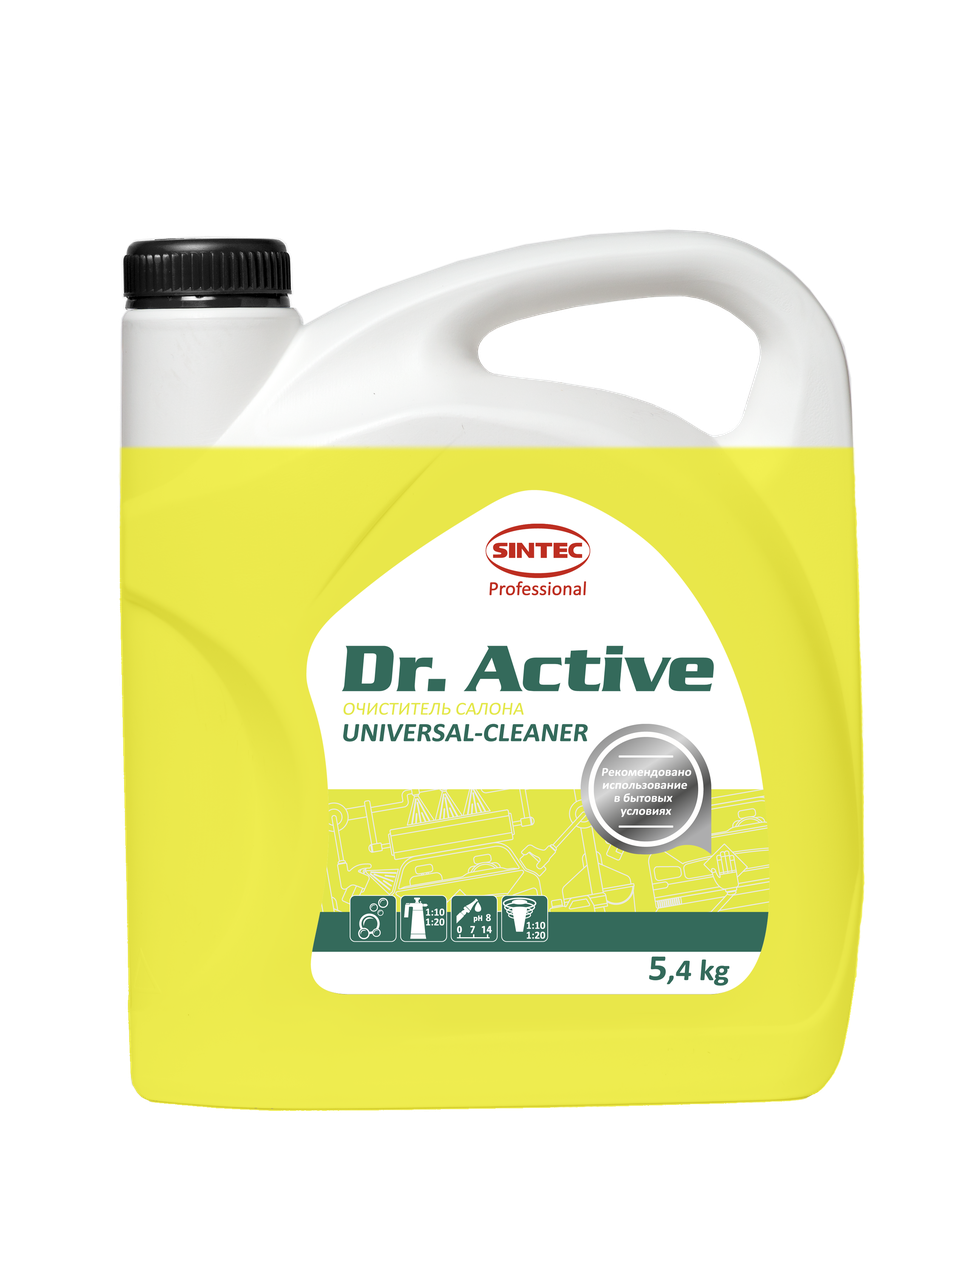 Очиститель салона универсальный 50-100 г/л воды, Sintec Dr. Active «Universal-cleaner» 5,4кг